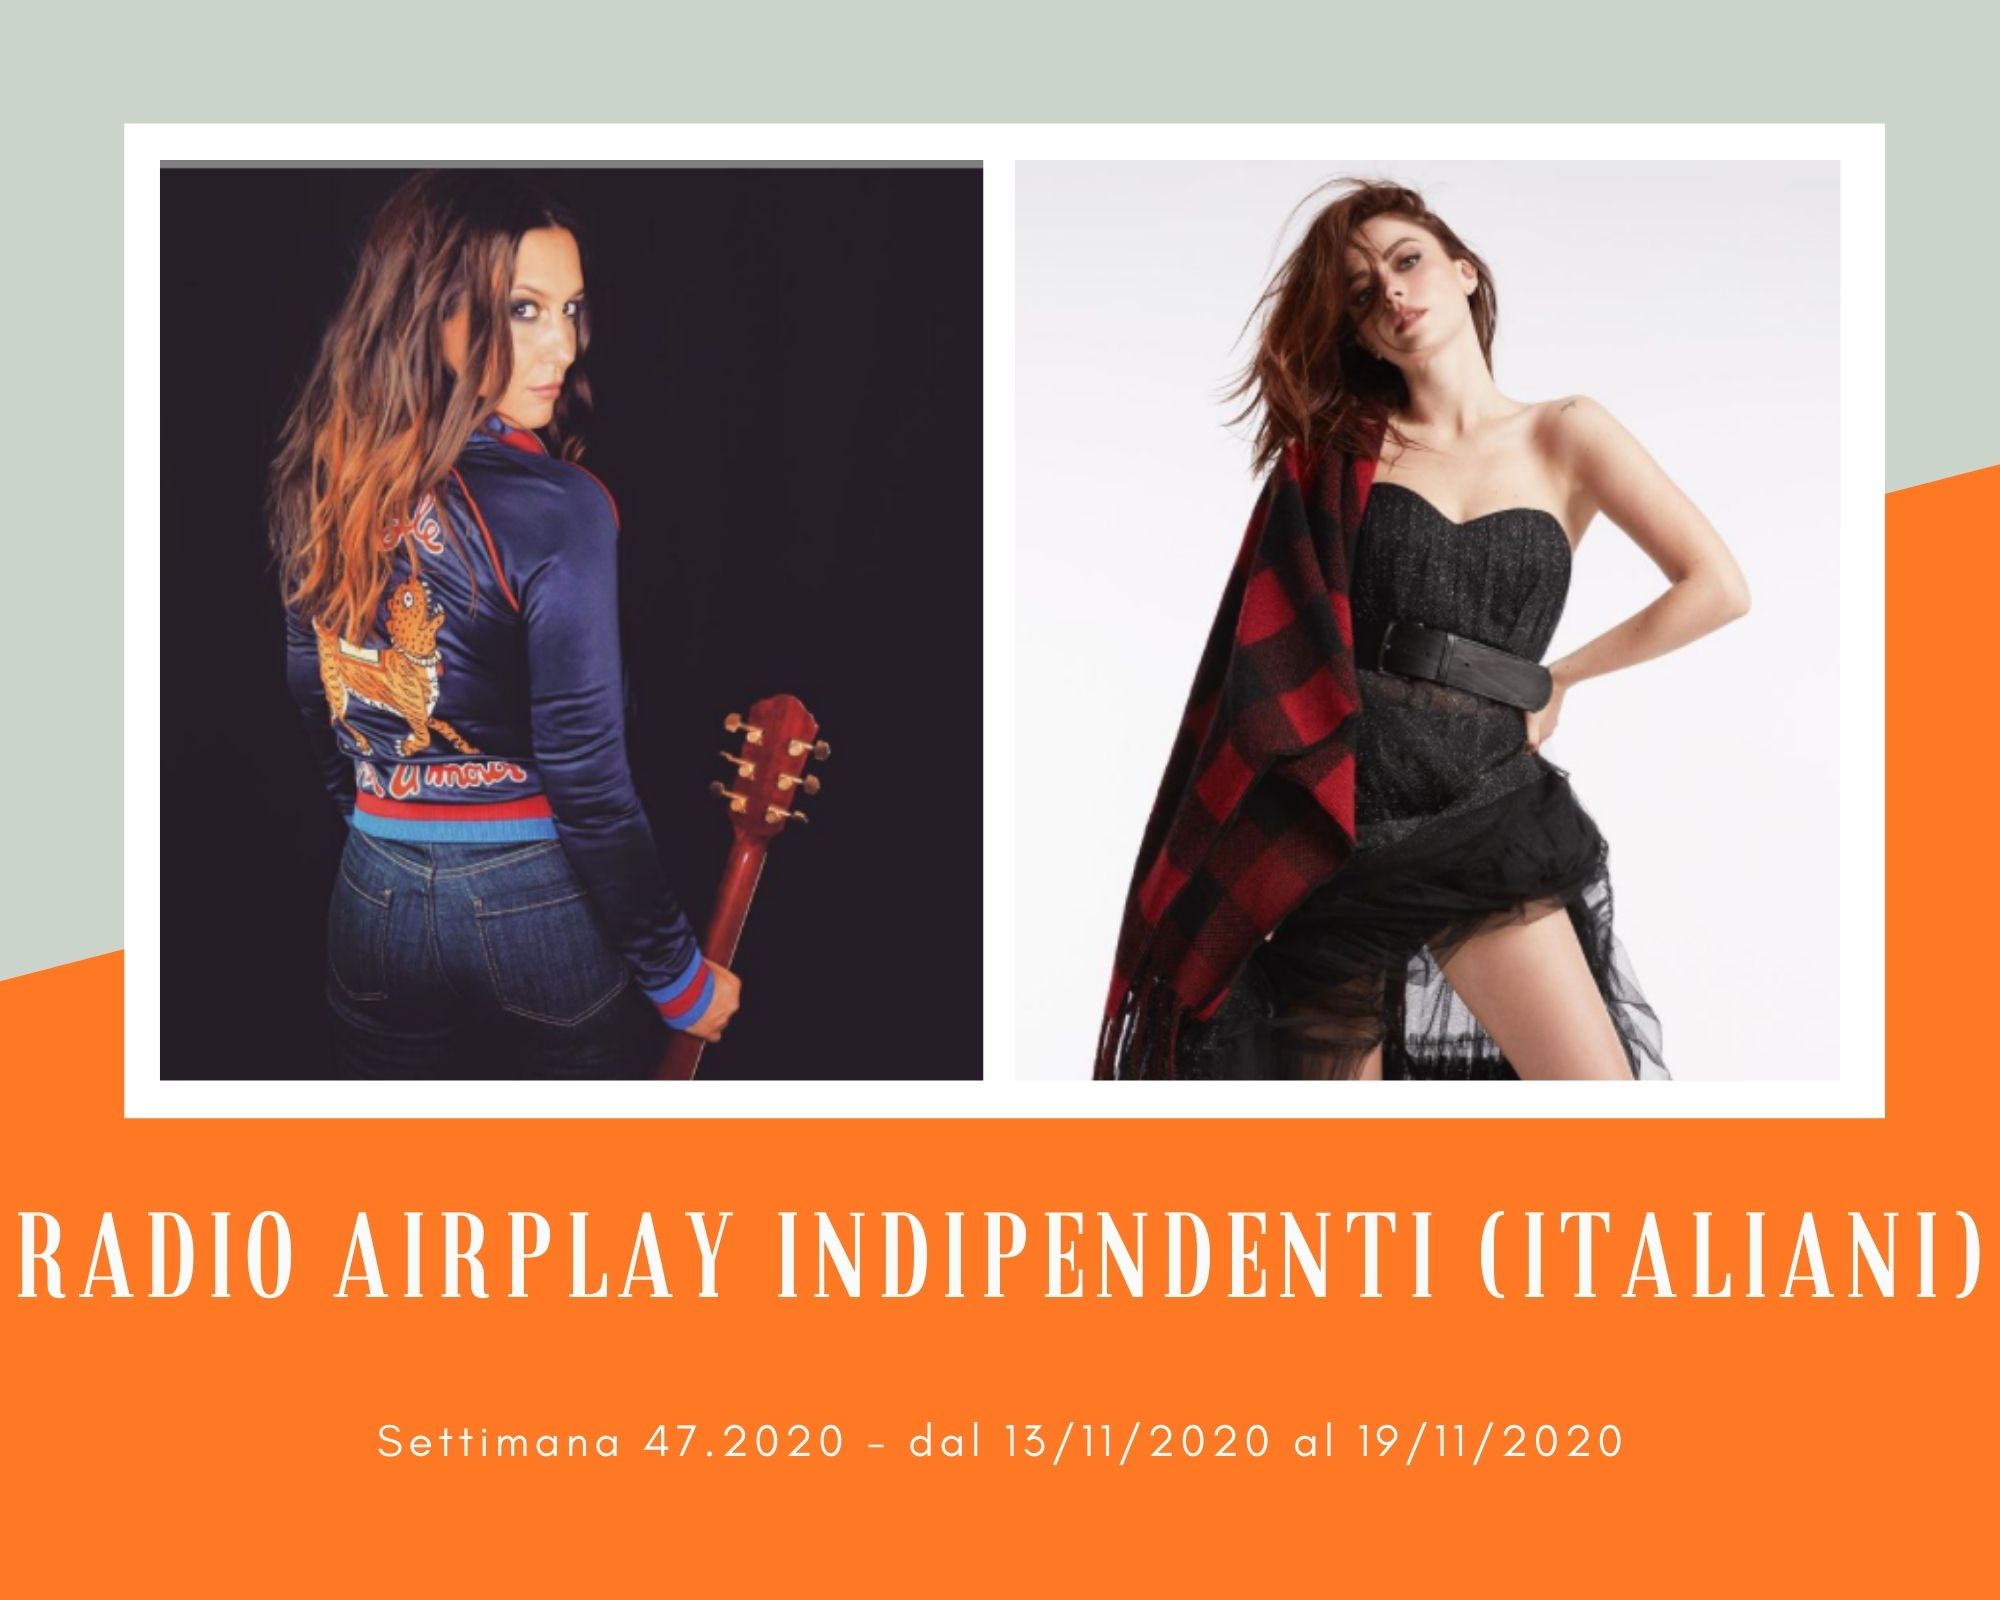 Classifica RADIO AIRPLAY Indipendenti Italiani, week 47. Avanza Alfa, nuova stampella di Annalisa, e La Camba a suon di raucedine